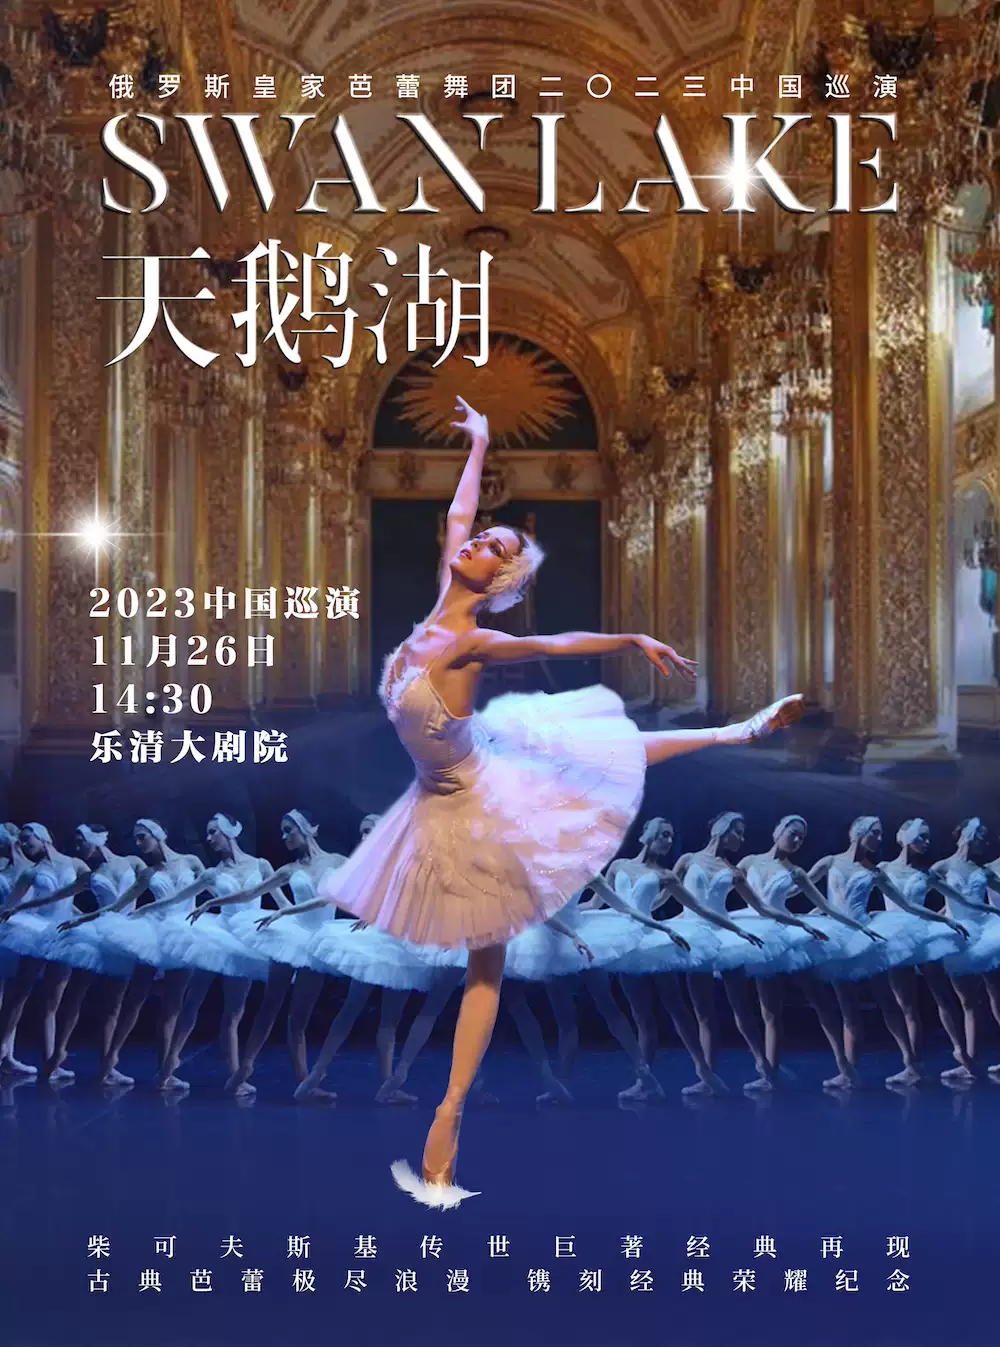 俄罗斯皇家芭蕾舞团《天鹅湖》温州站